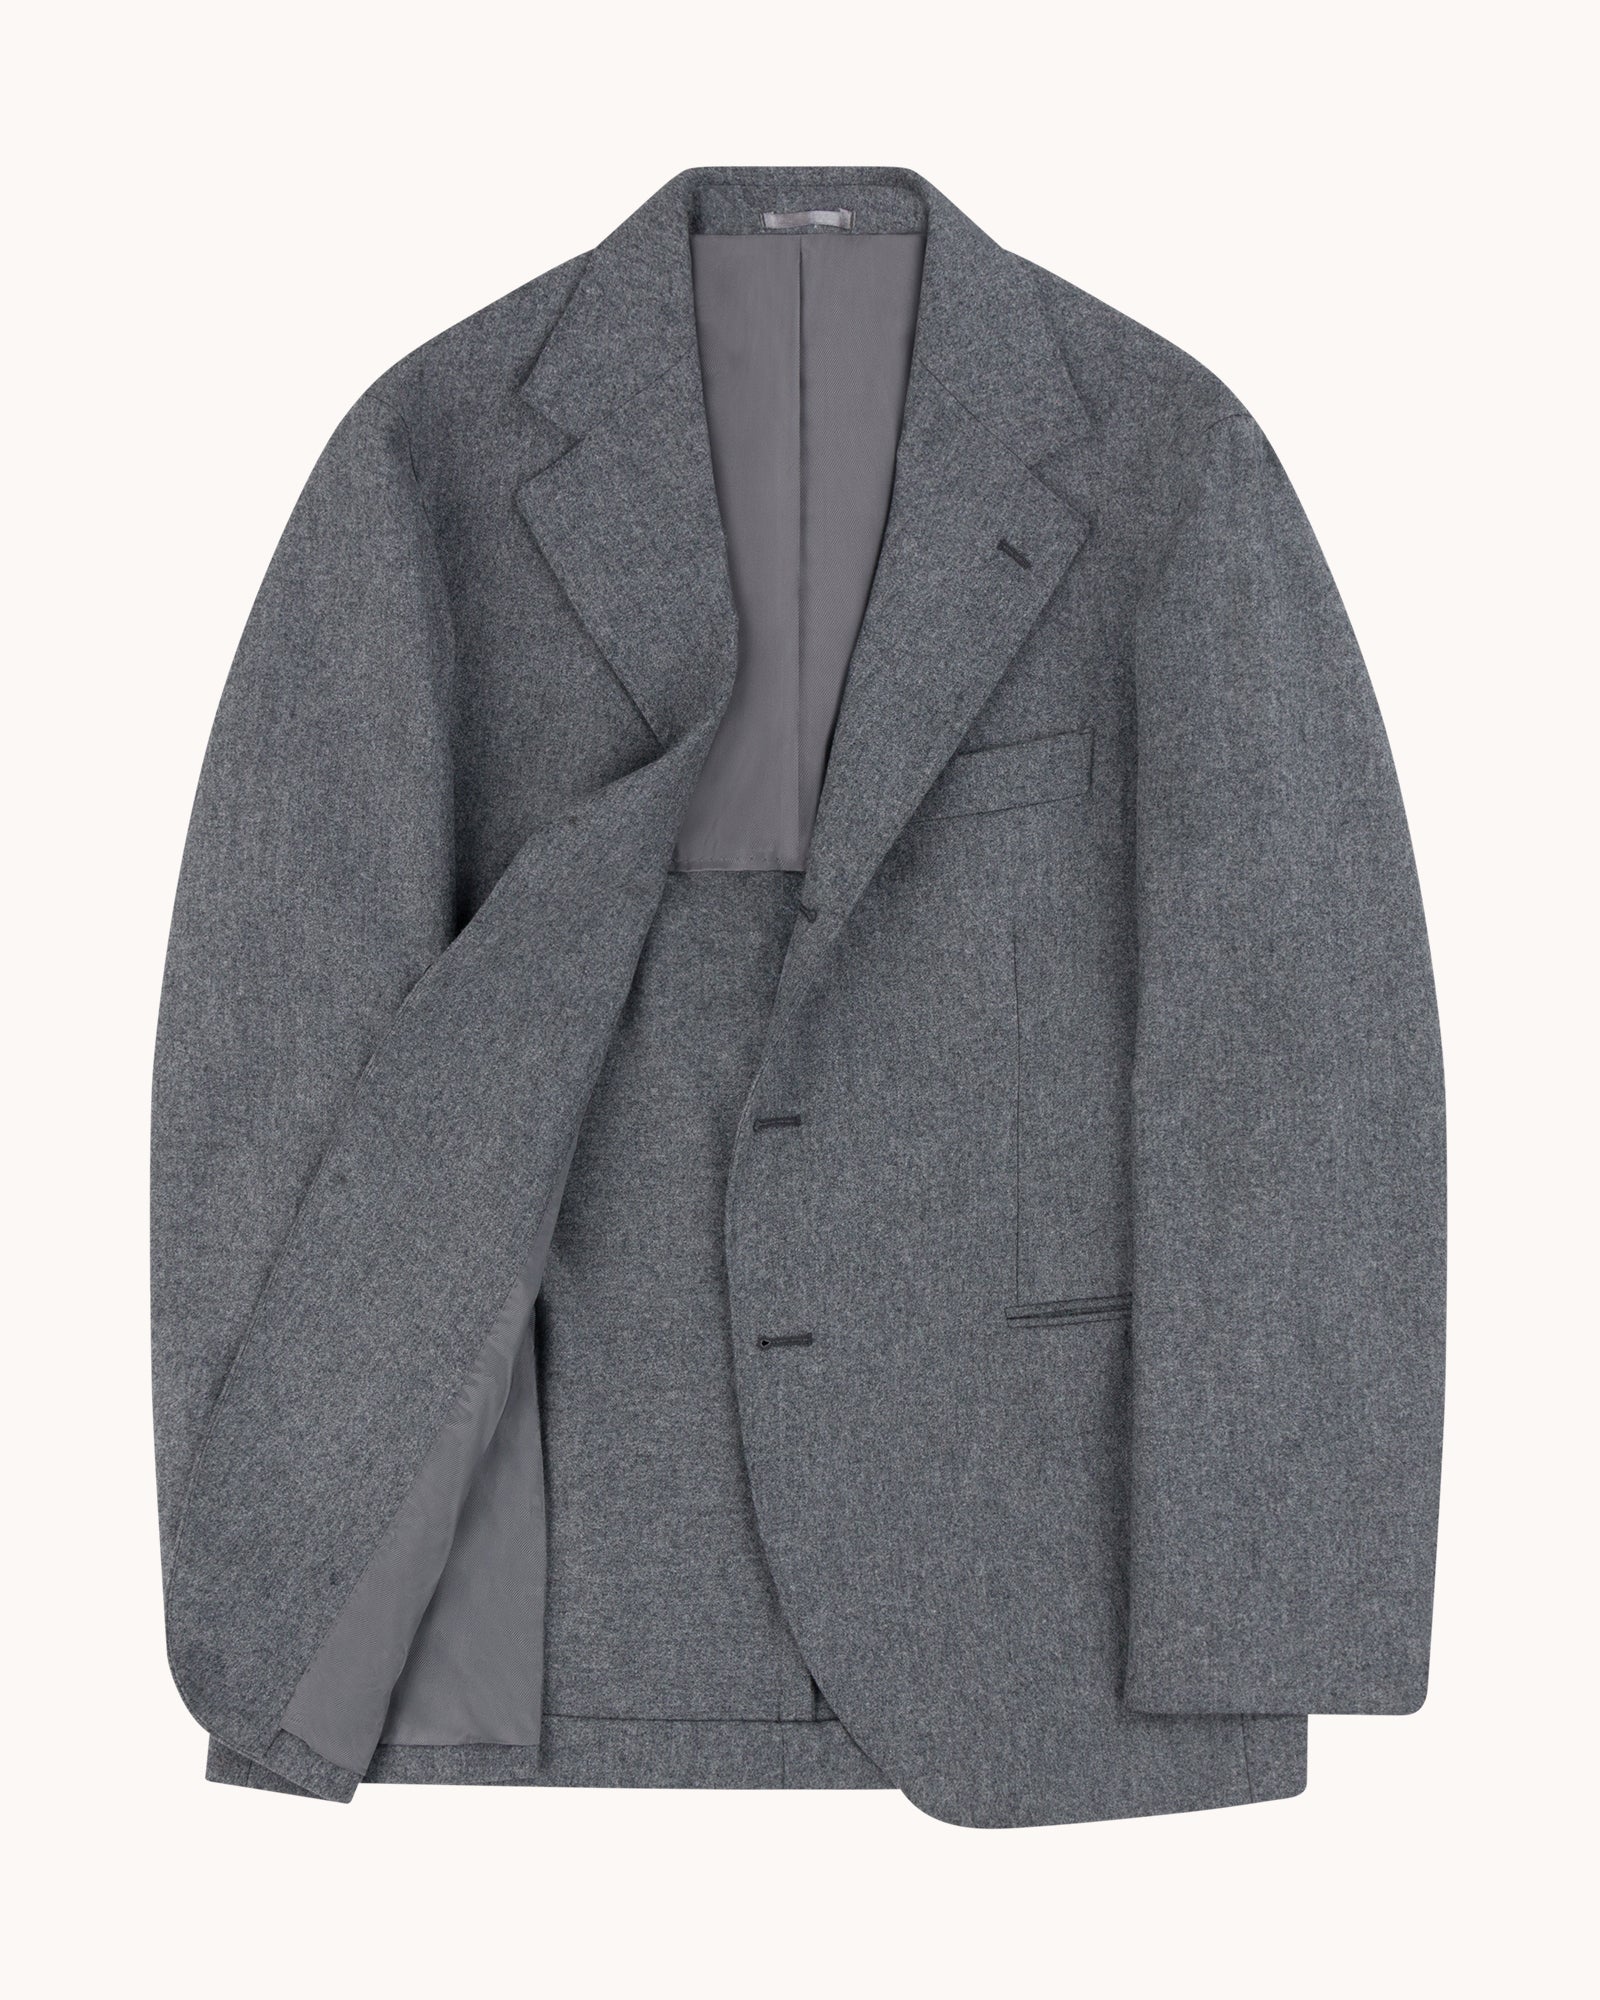 Sport Jacket - Light Grey Woollen Flannel